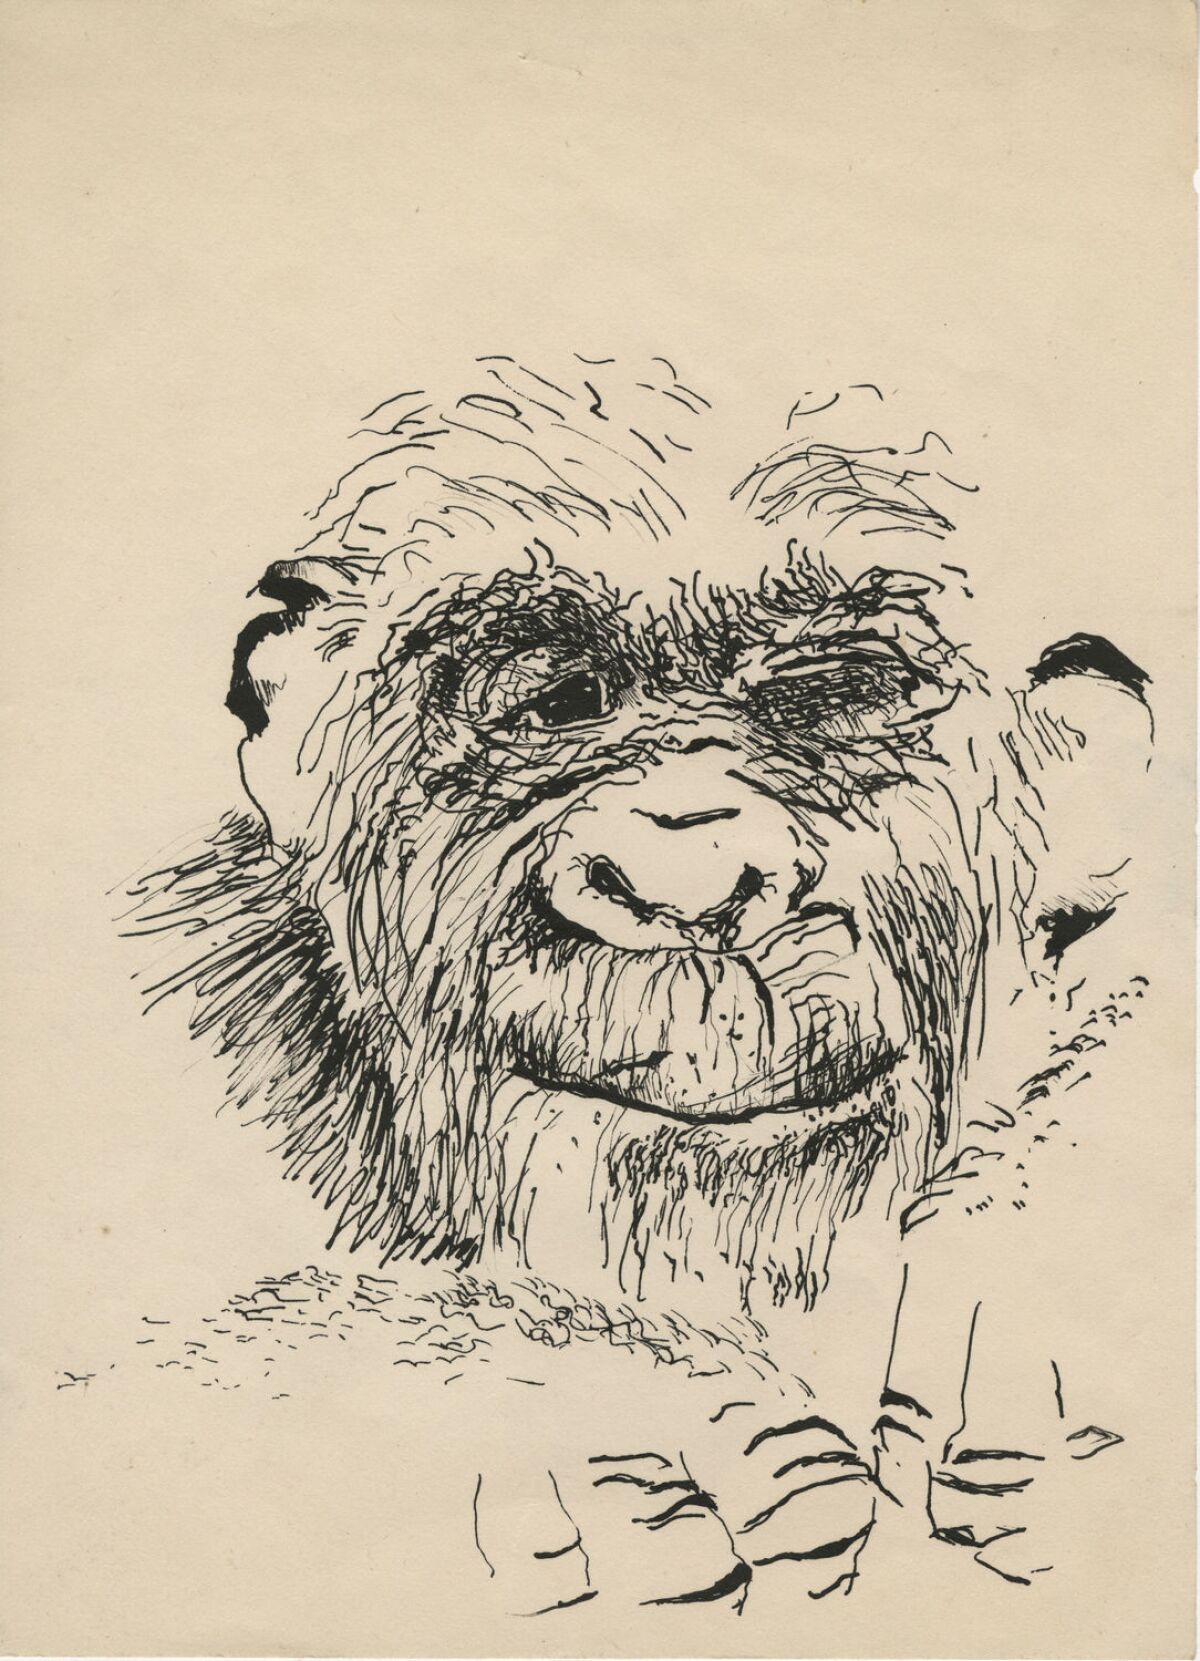 Paul McCarthy's self portrait as a monkey, drawn when he was in high school.